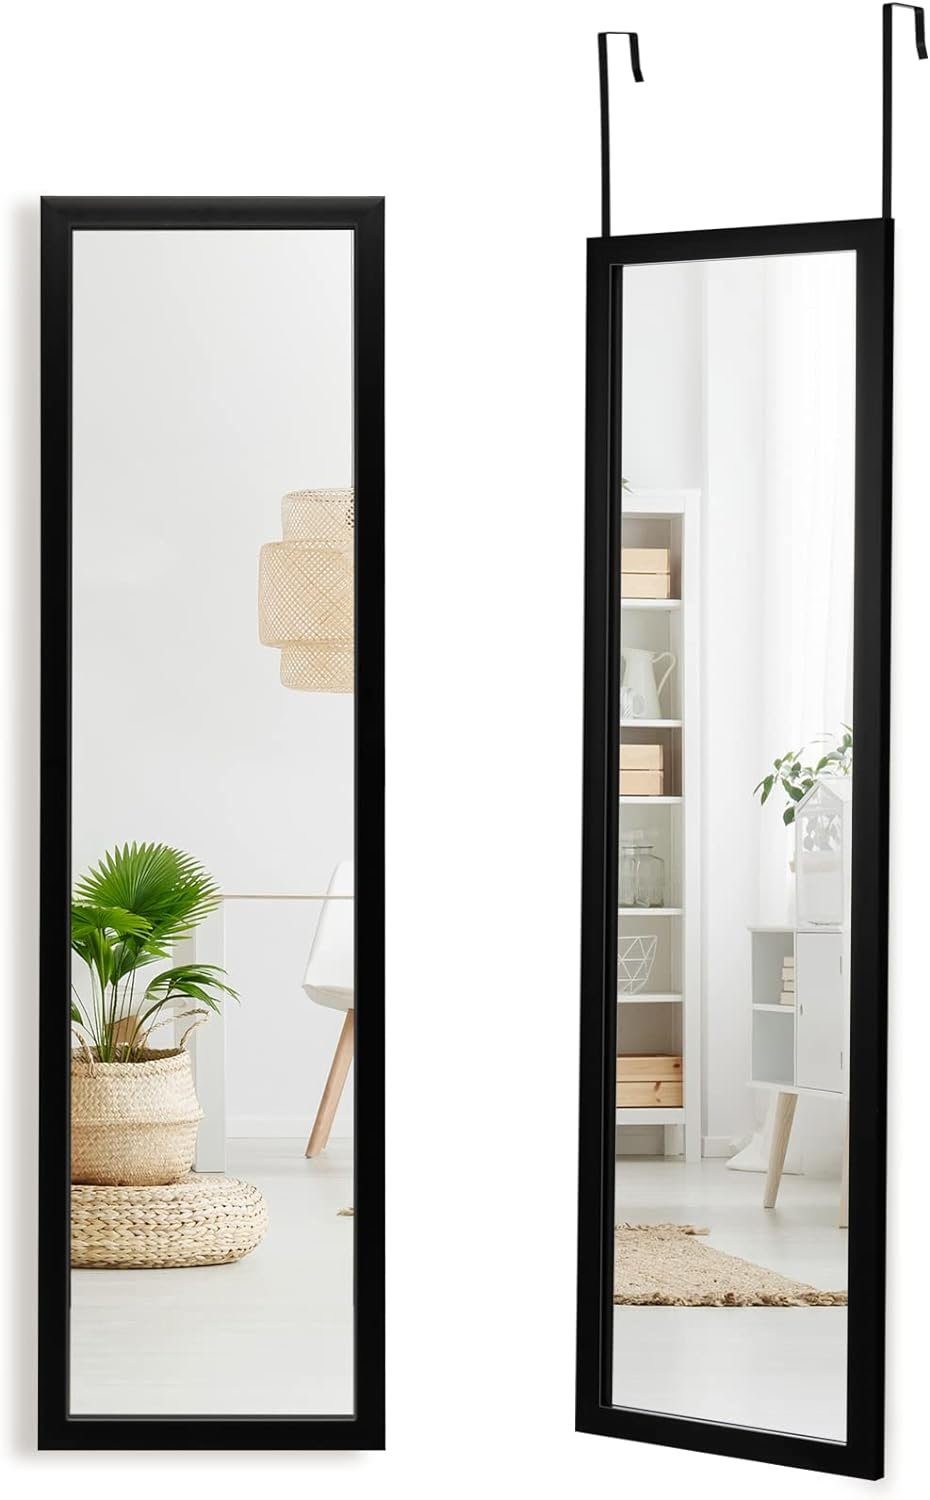 KOMFOTTEU Ganzkörperspiegel, mit Aufhängehaken, 119 cm x 33 cm